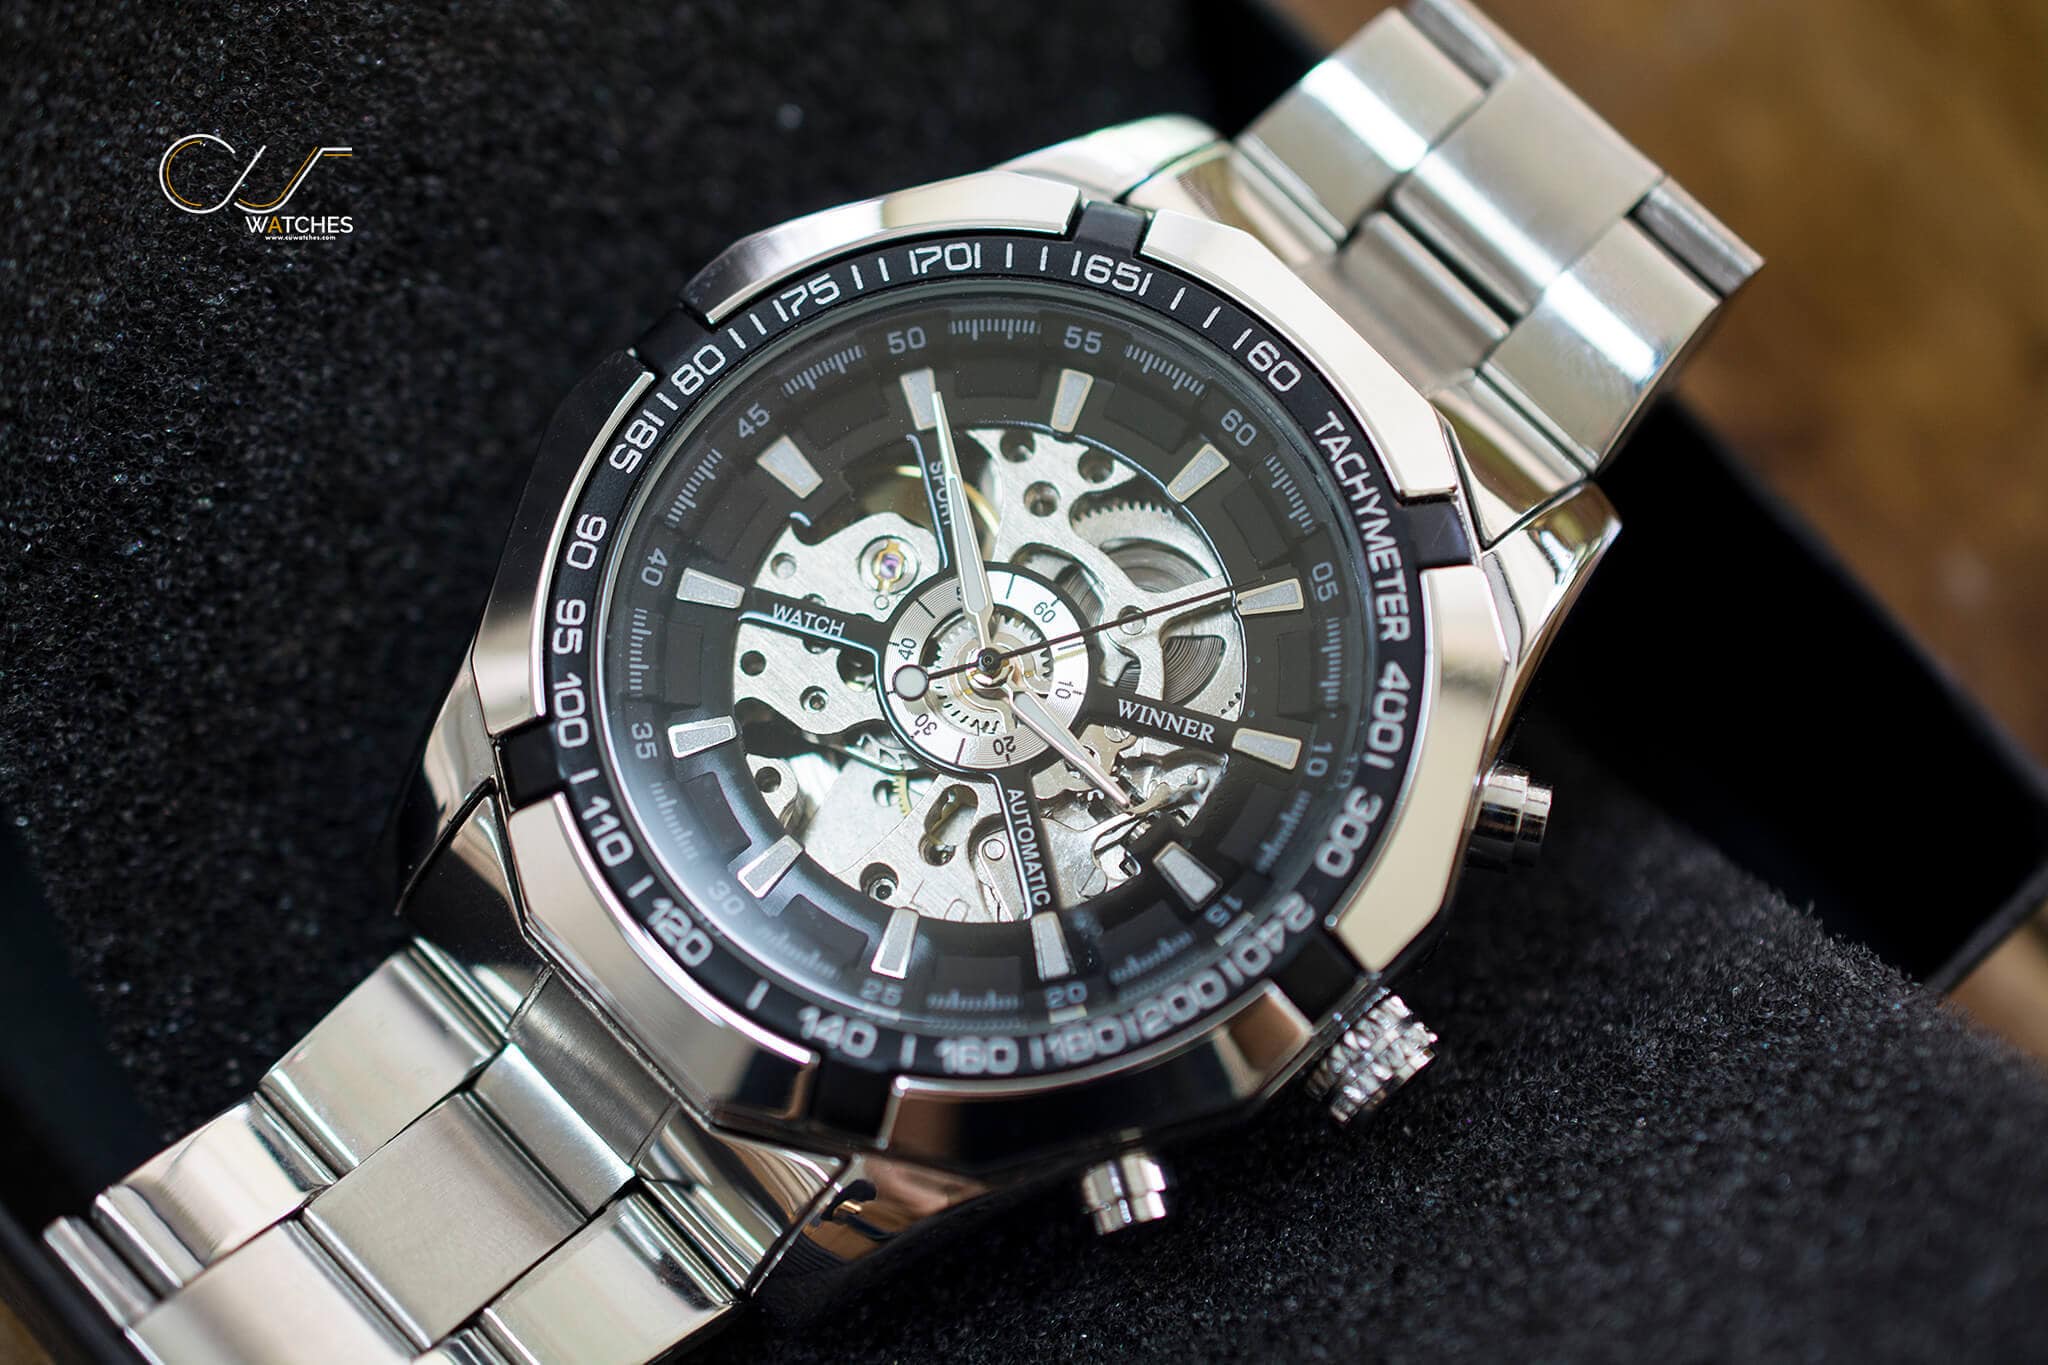 นาฬิกาข้อมือ WMT101 สายสแตนเลส หน้าปัดดำ รุ่น WMT101